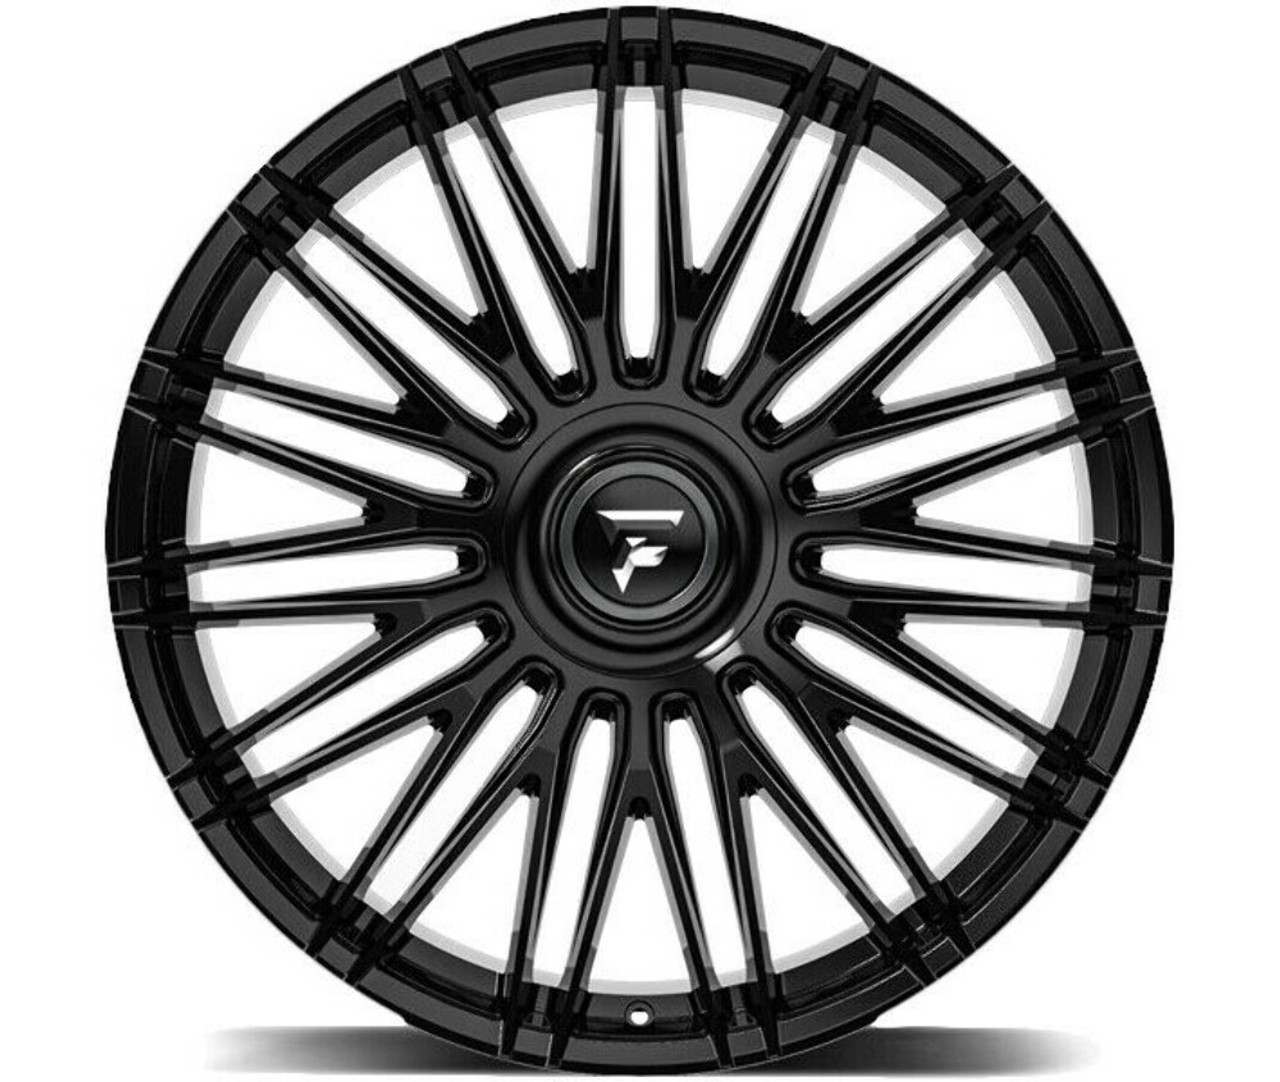 24" Fittipaldi Street FS369B Gloss Black 24x10 Wheel 5x115 5x120 20mm Rim